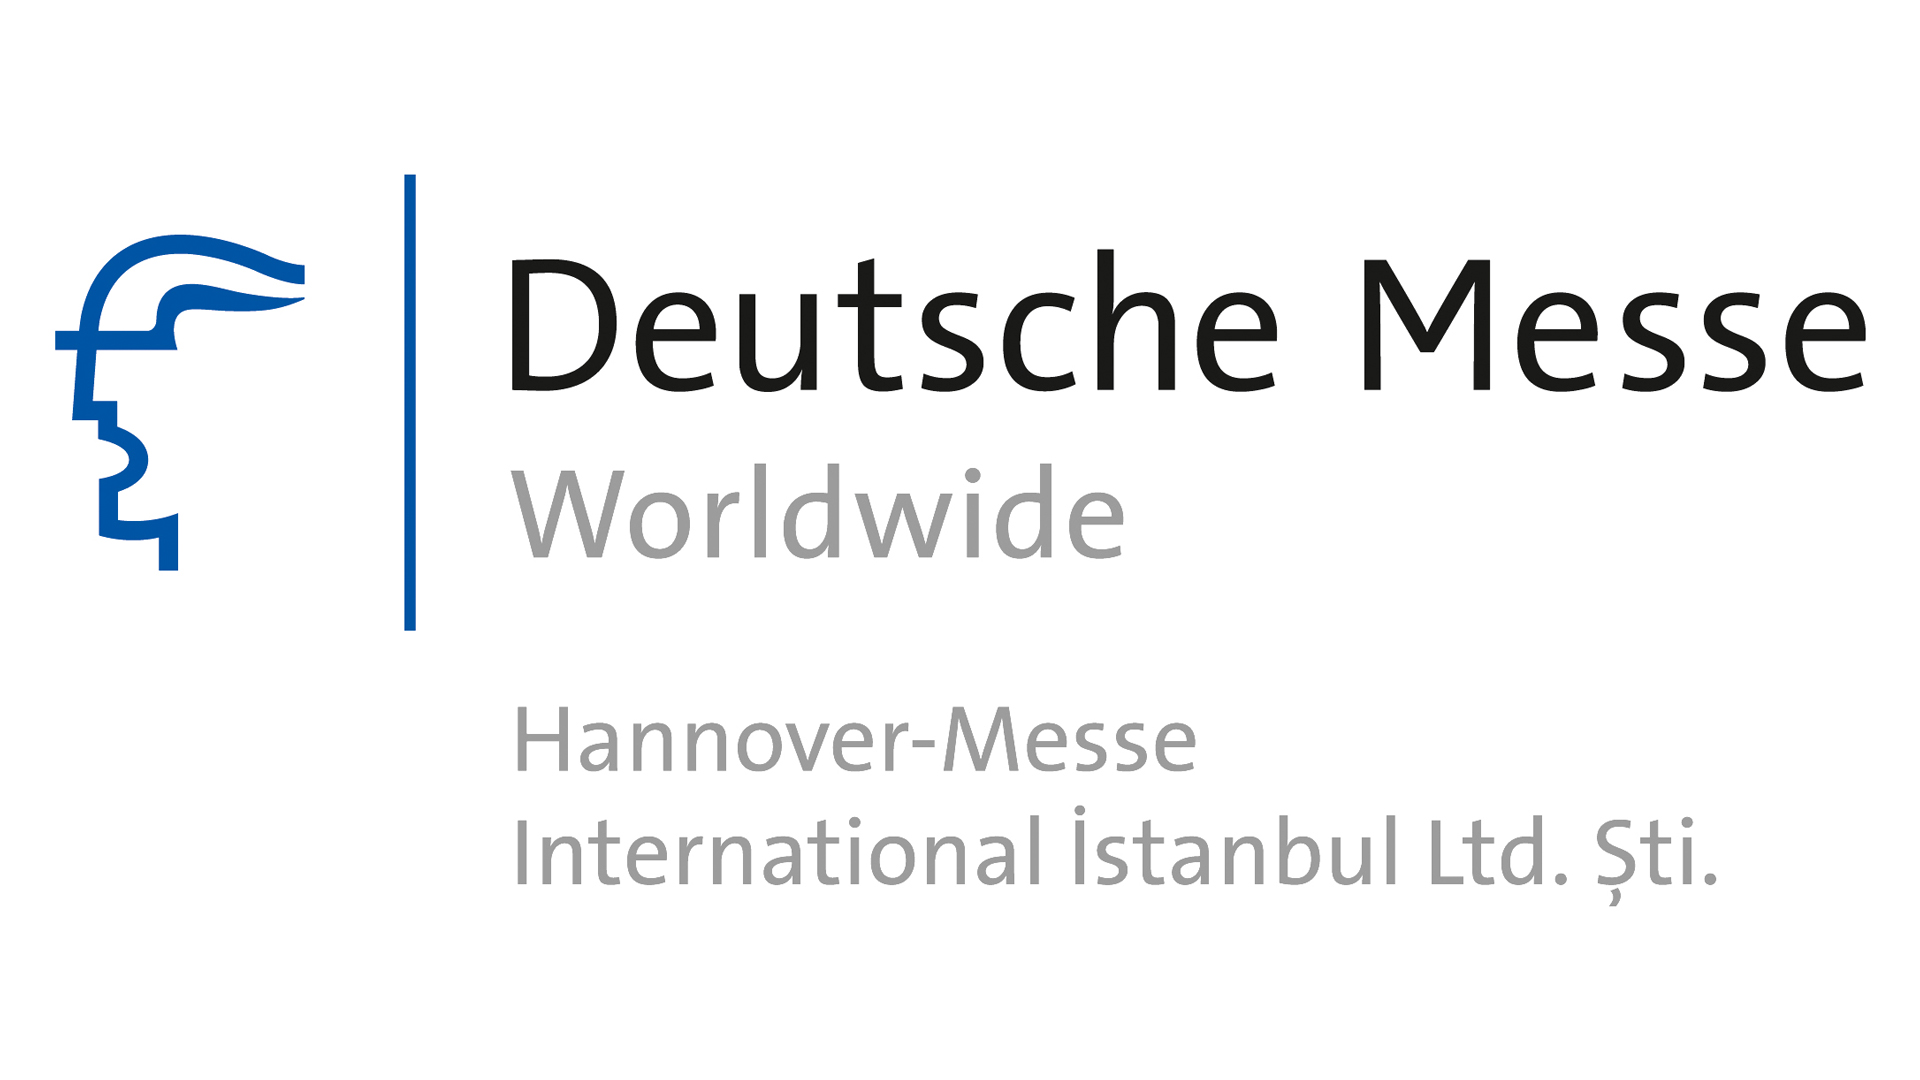 Deutsche Messe Logo